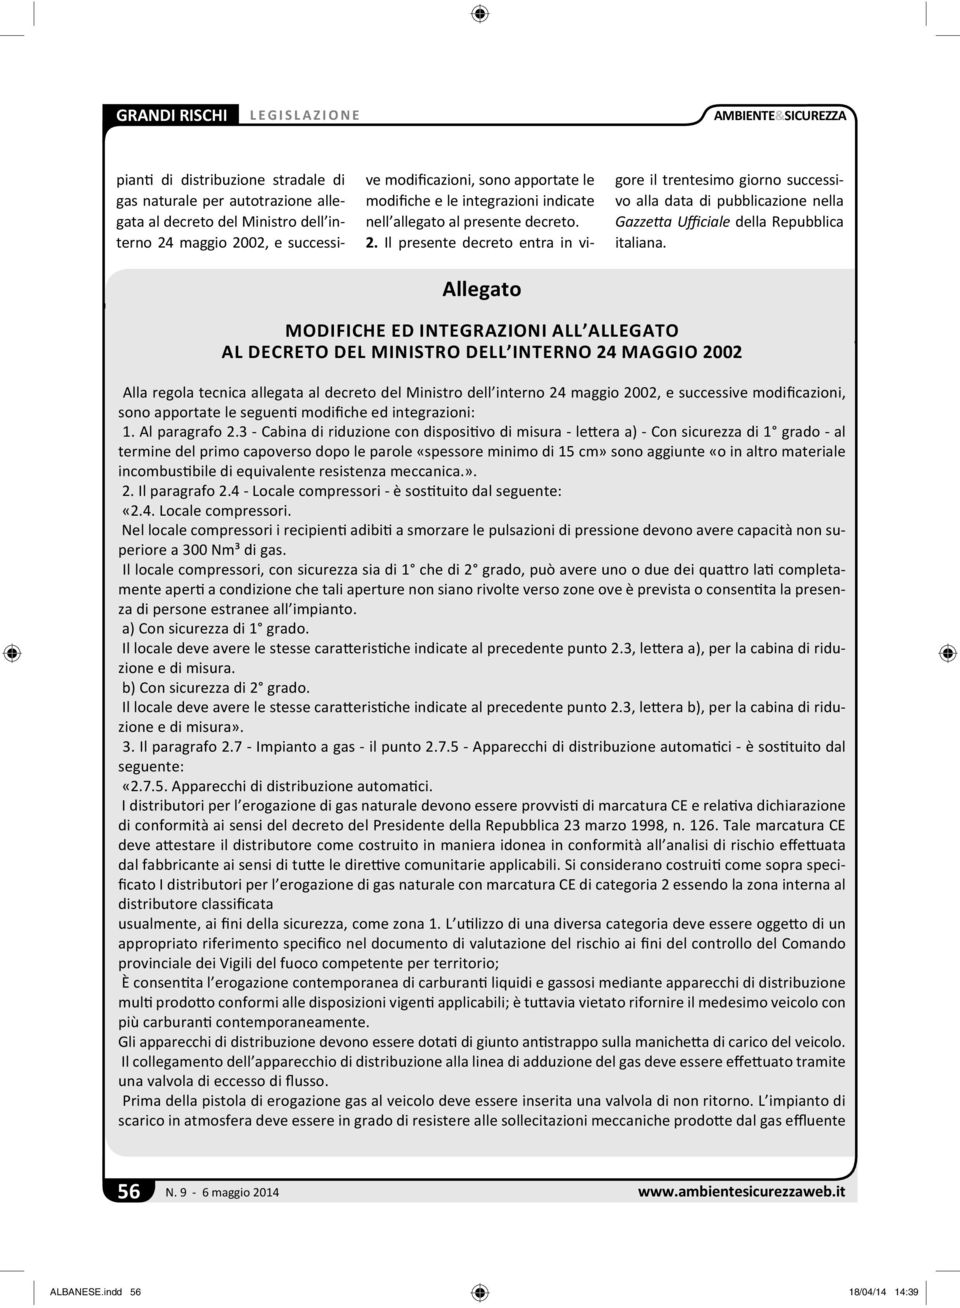 Il presente decreto entra in vigore il trentesimo giorno successivo alla data di pubblicazione nella Gazze a Ufficiale della Repubblica italiana.